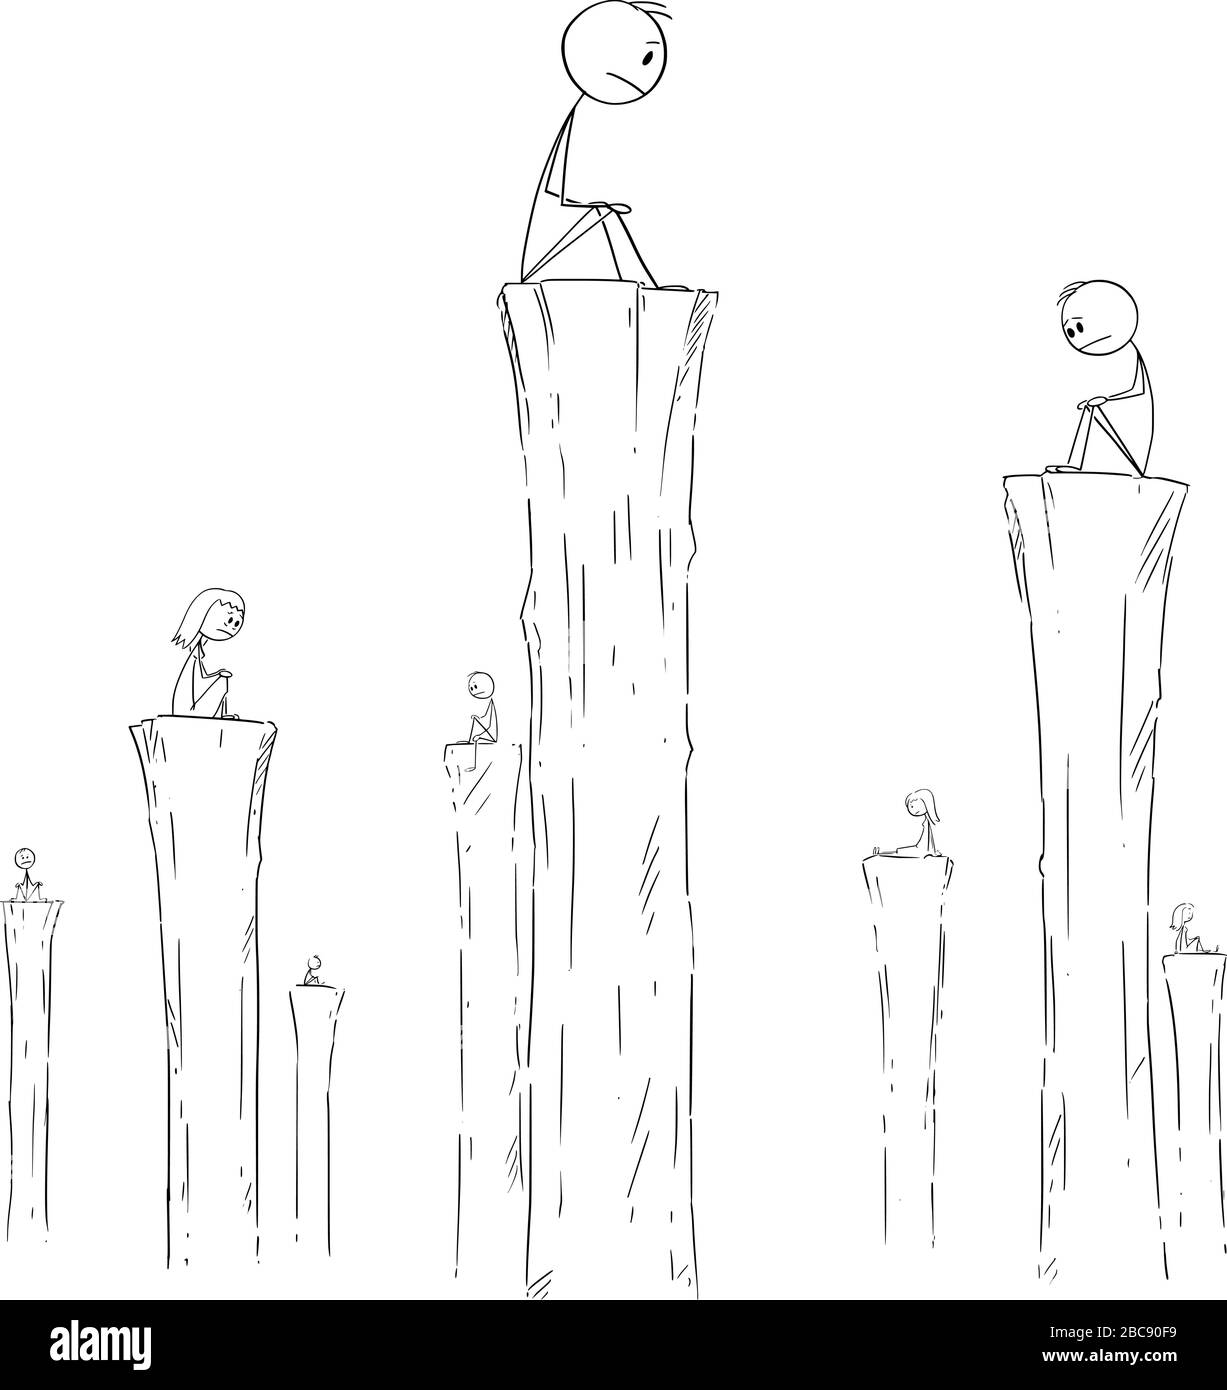 Vector Cartoon Stick Figure Zeichnung konzeptionelle Illustration von Menschen, die allein auf hohen Säulen sitzen. Begriff der Einsamkeit, Einsamkeit oder Einsamkeit. Stock Vektor